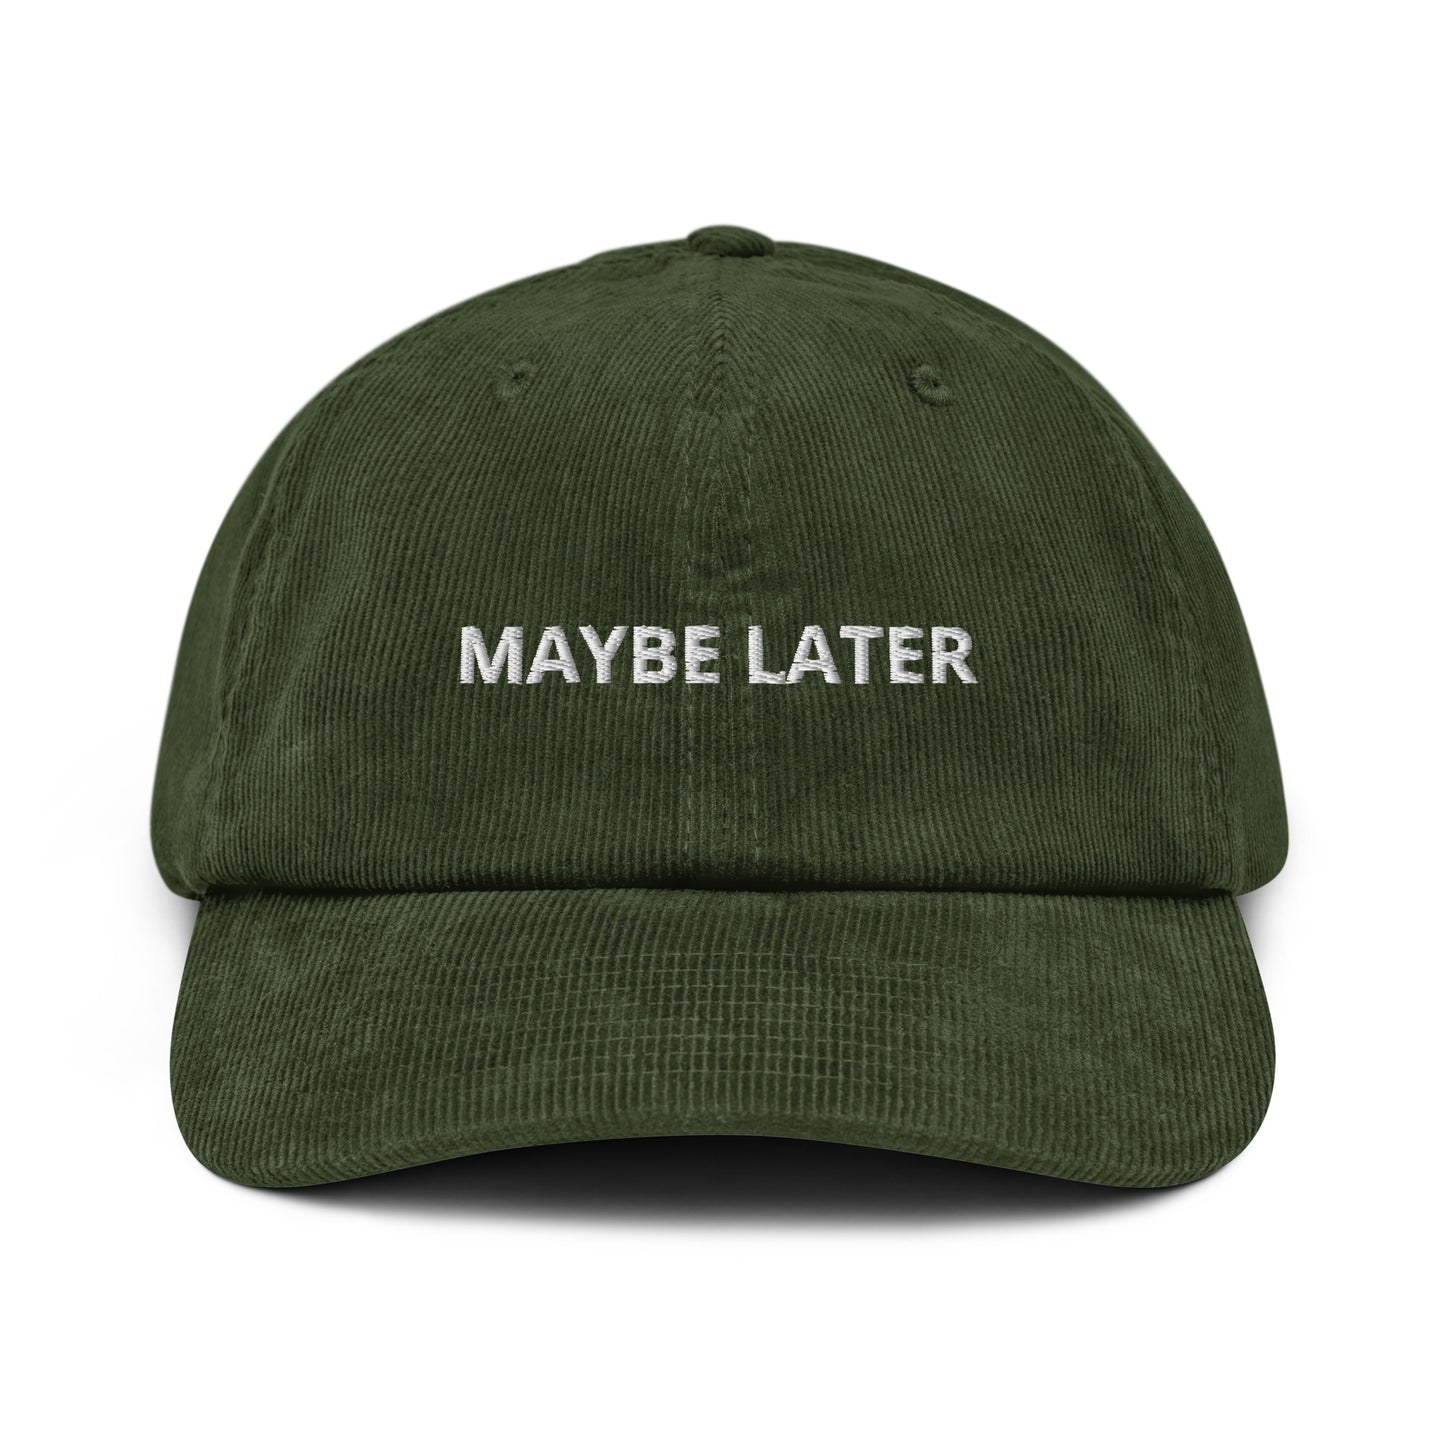 Maybe Later Cord-Cap mit weichem Stoff und Aufdruck 'Maybe Later' - Accessoire zum Aufschieben und Träumen